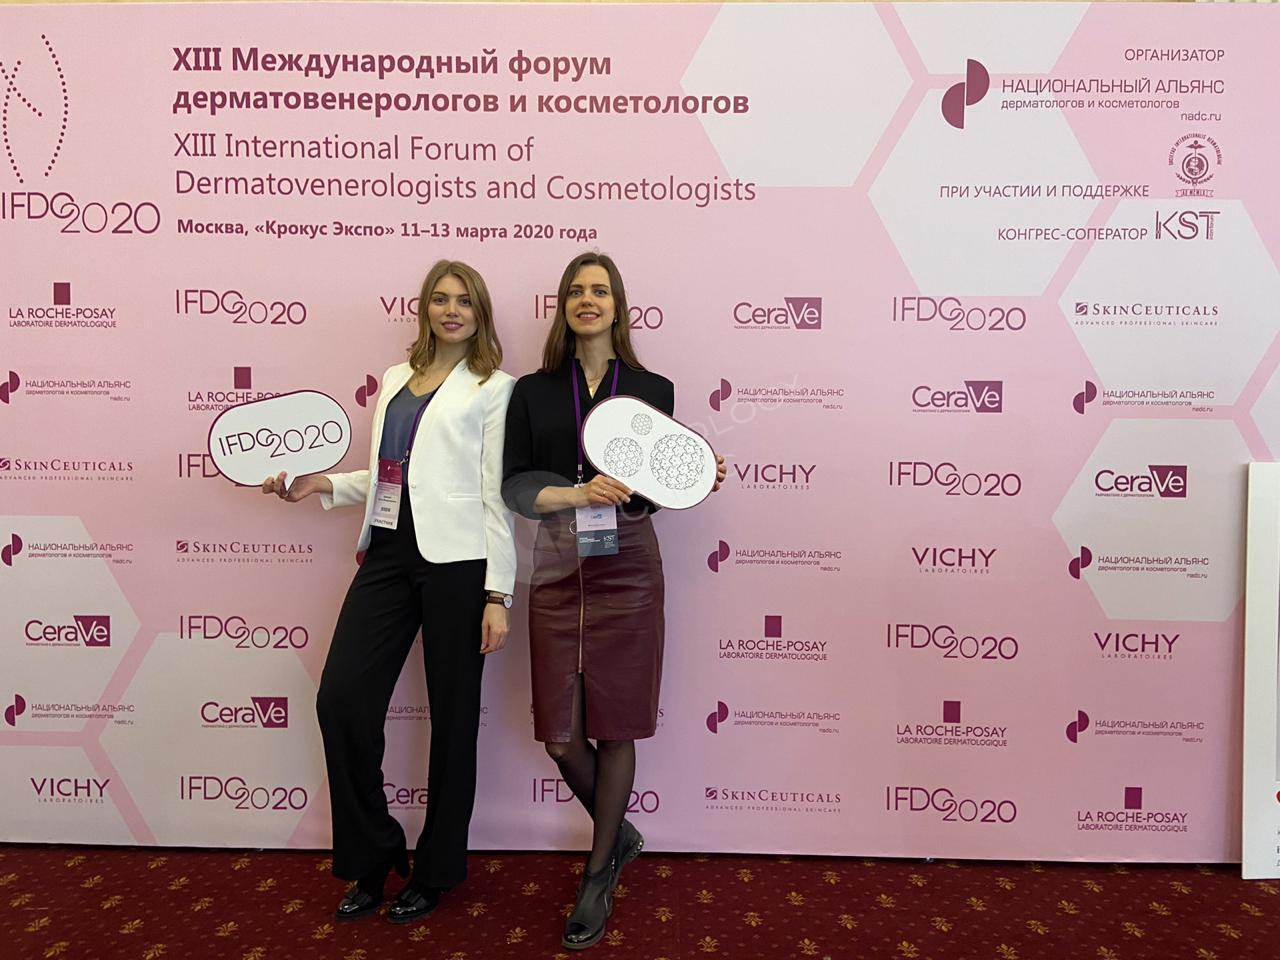 XIII Международный форум дерматовенерологов и косметологов IFDC2020, фото 4